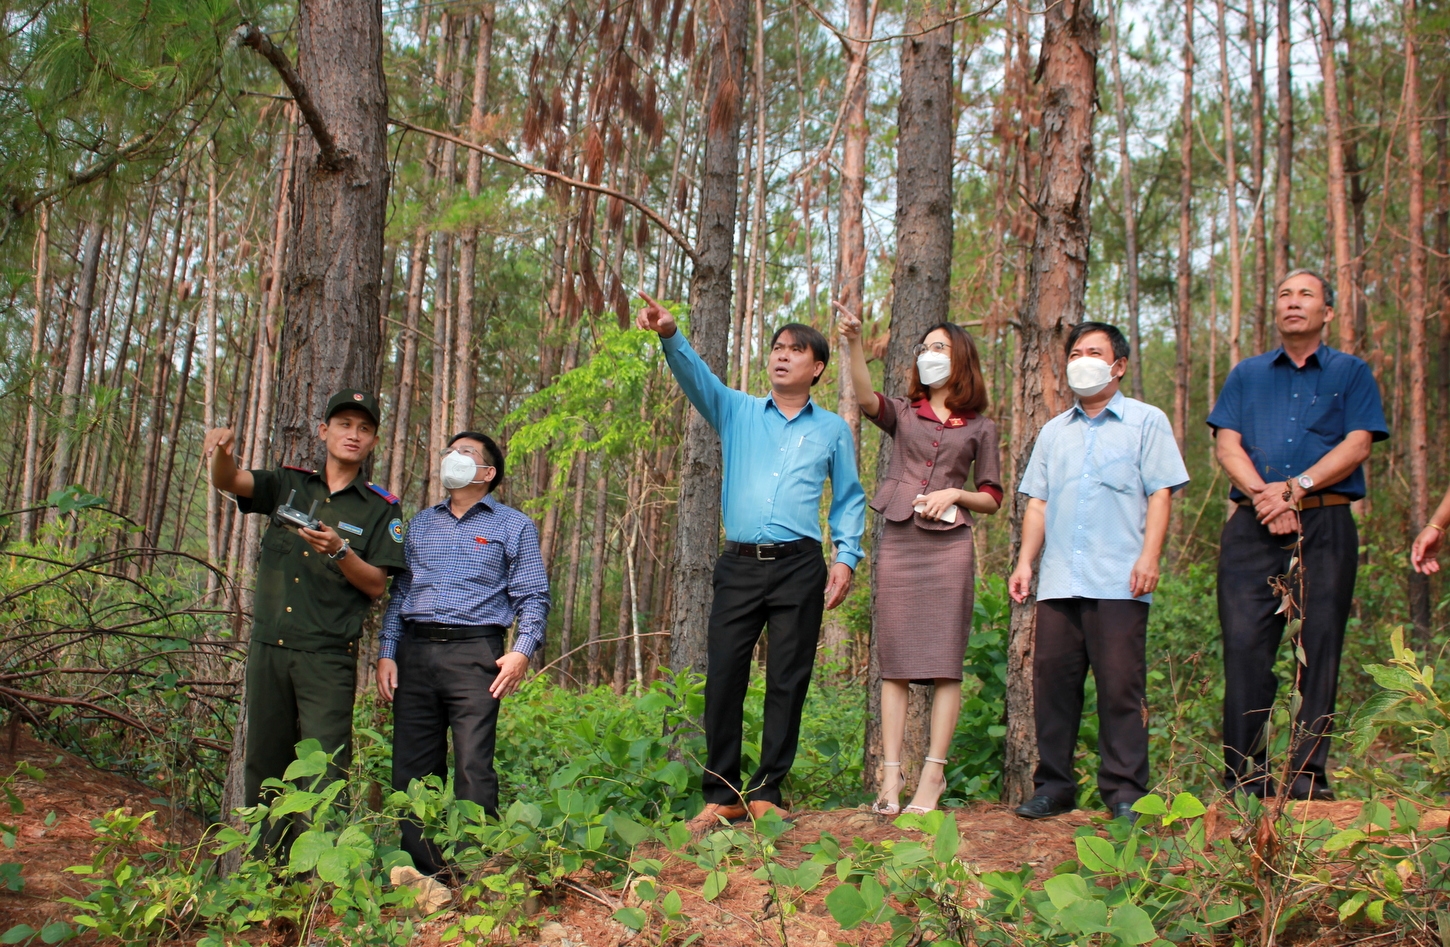 Kon Tum là tỉnh có nhiều công ty NLN có diện tích bình quân một người rất cao, như: Công ty Đăk Tô là 1.123 ha/người, Công ty Đăk Hà là 5.687 ha/người, Công ty Kon Plông là 1.358 ha/người,… (Đoàn ĐBQH tỉnh Kon Tum kiểm tra diện tích rừng trồng thuộc lâm phần quản lý của Công ty TNHH MTV Lâm nghiệp Kon Rẫy tại xã Đăk Kôi, huyện Kon Rẫy tháng 4/2022)